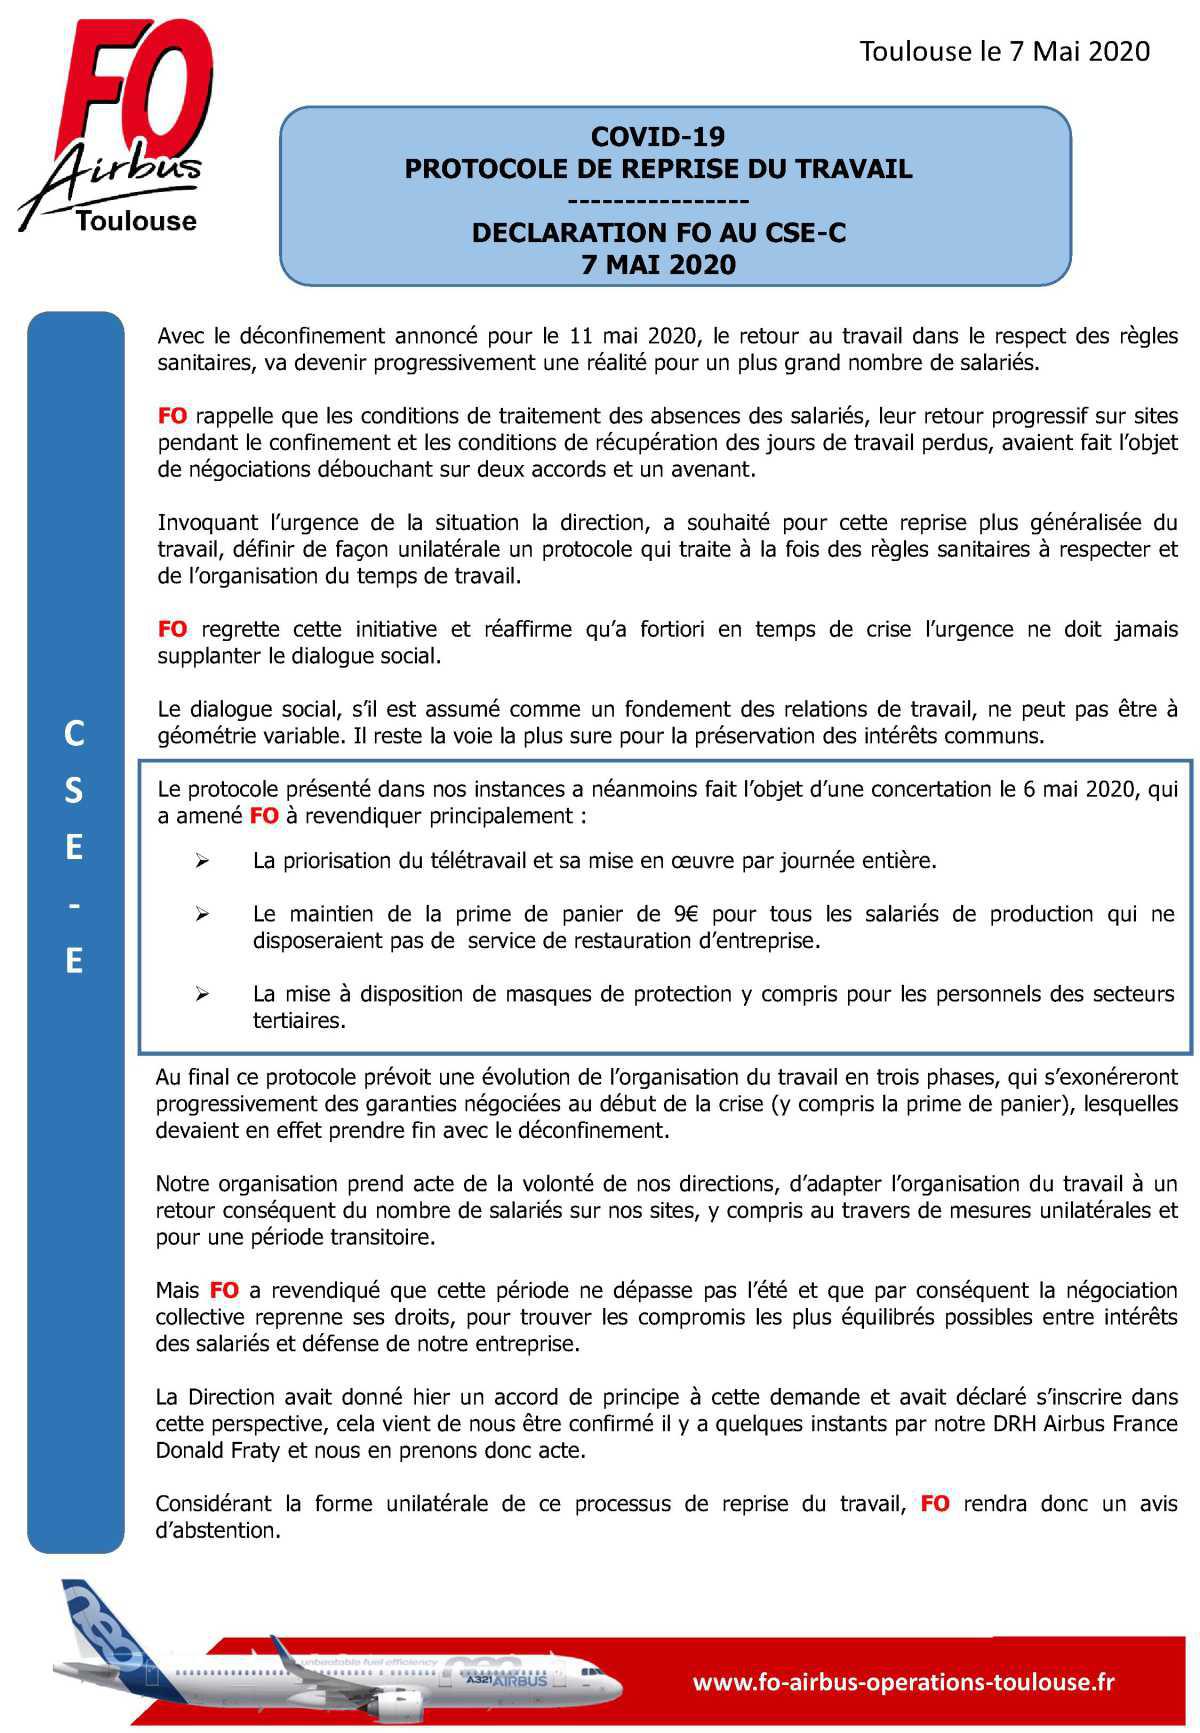 PROTOCOLE DE REPRISE DU TRAVAIL - DECLARATION AU CSE-C du 7 Mai 2020